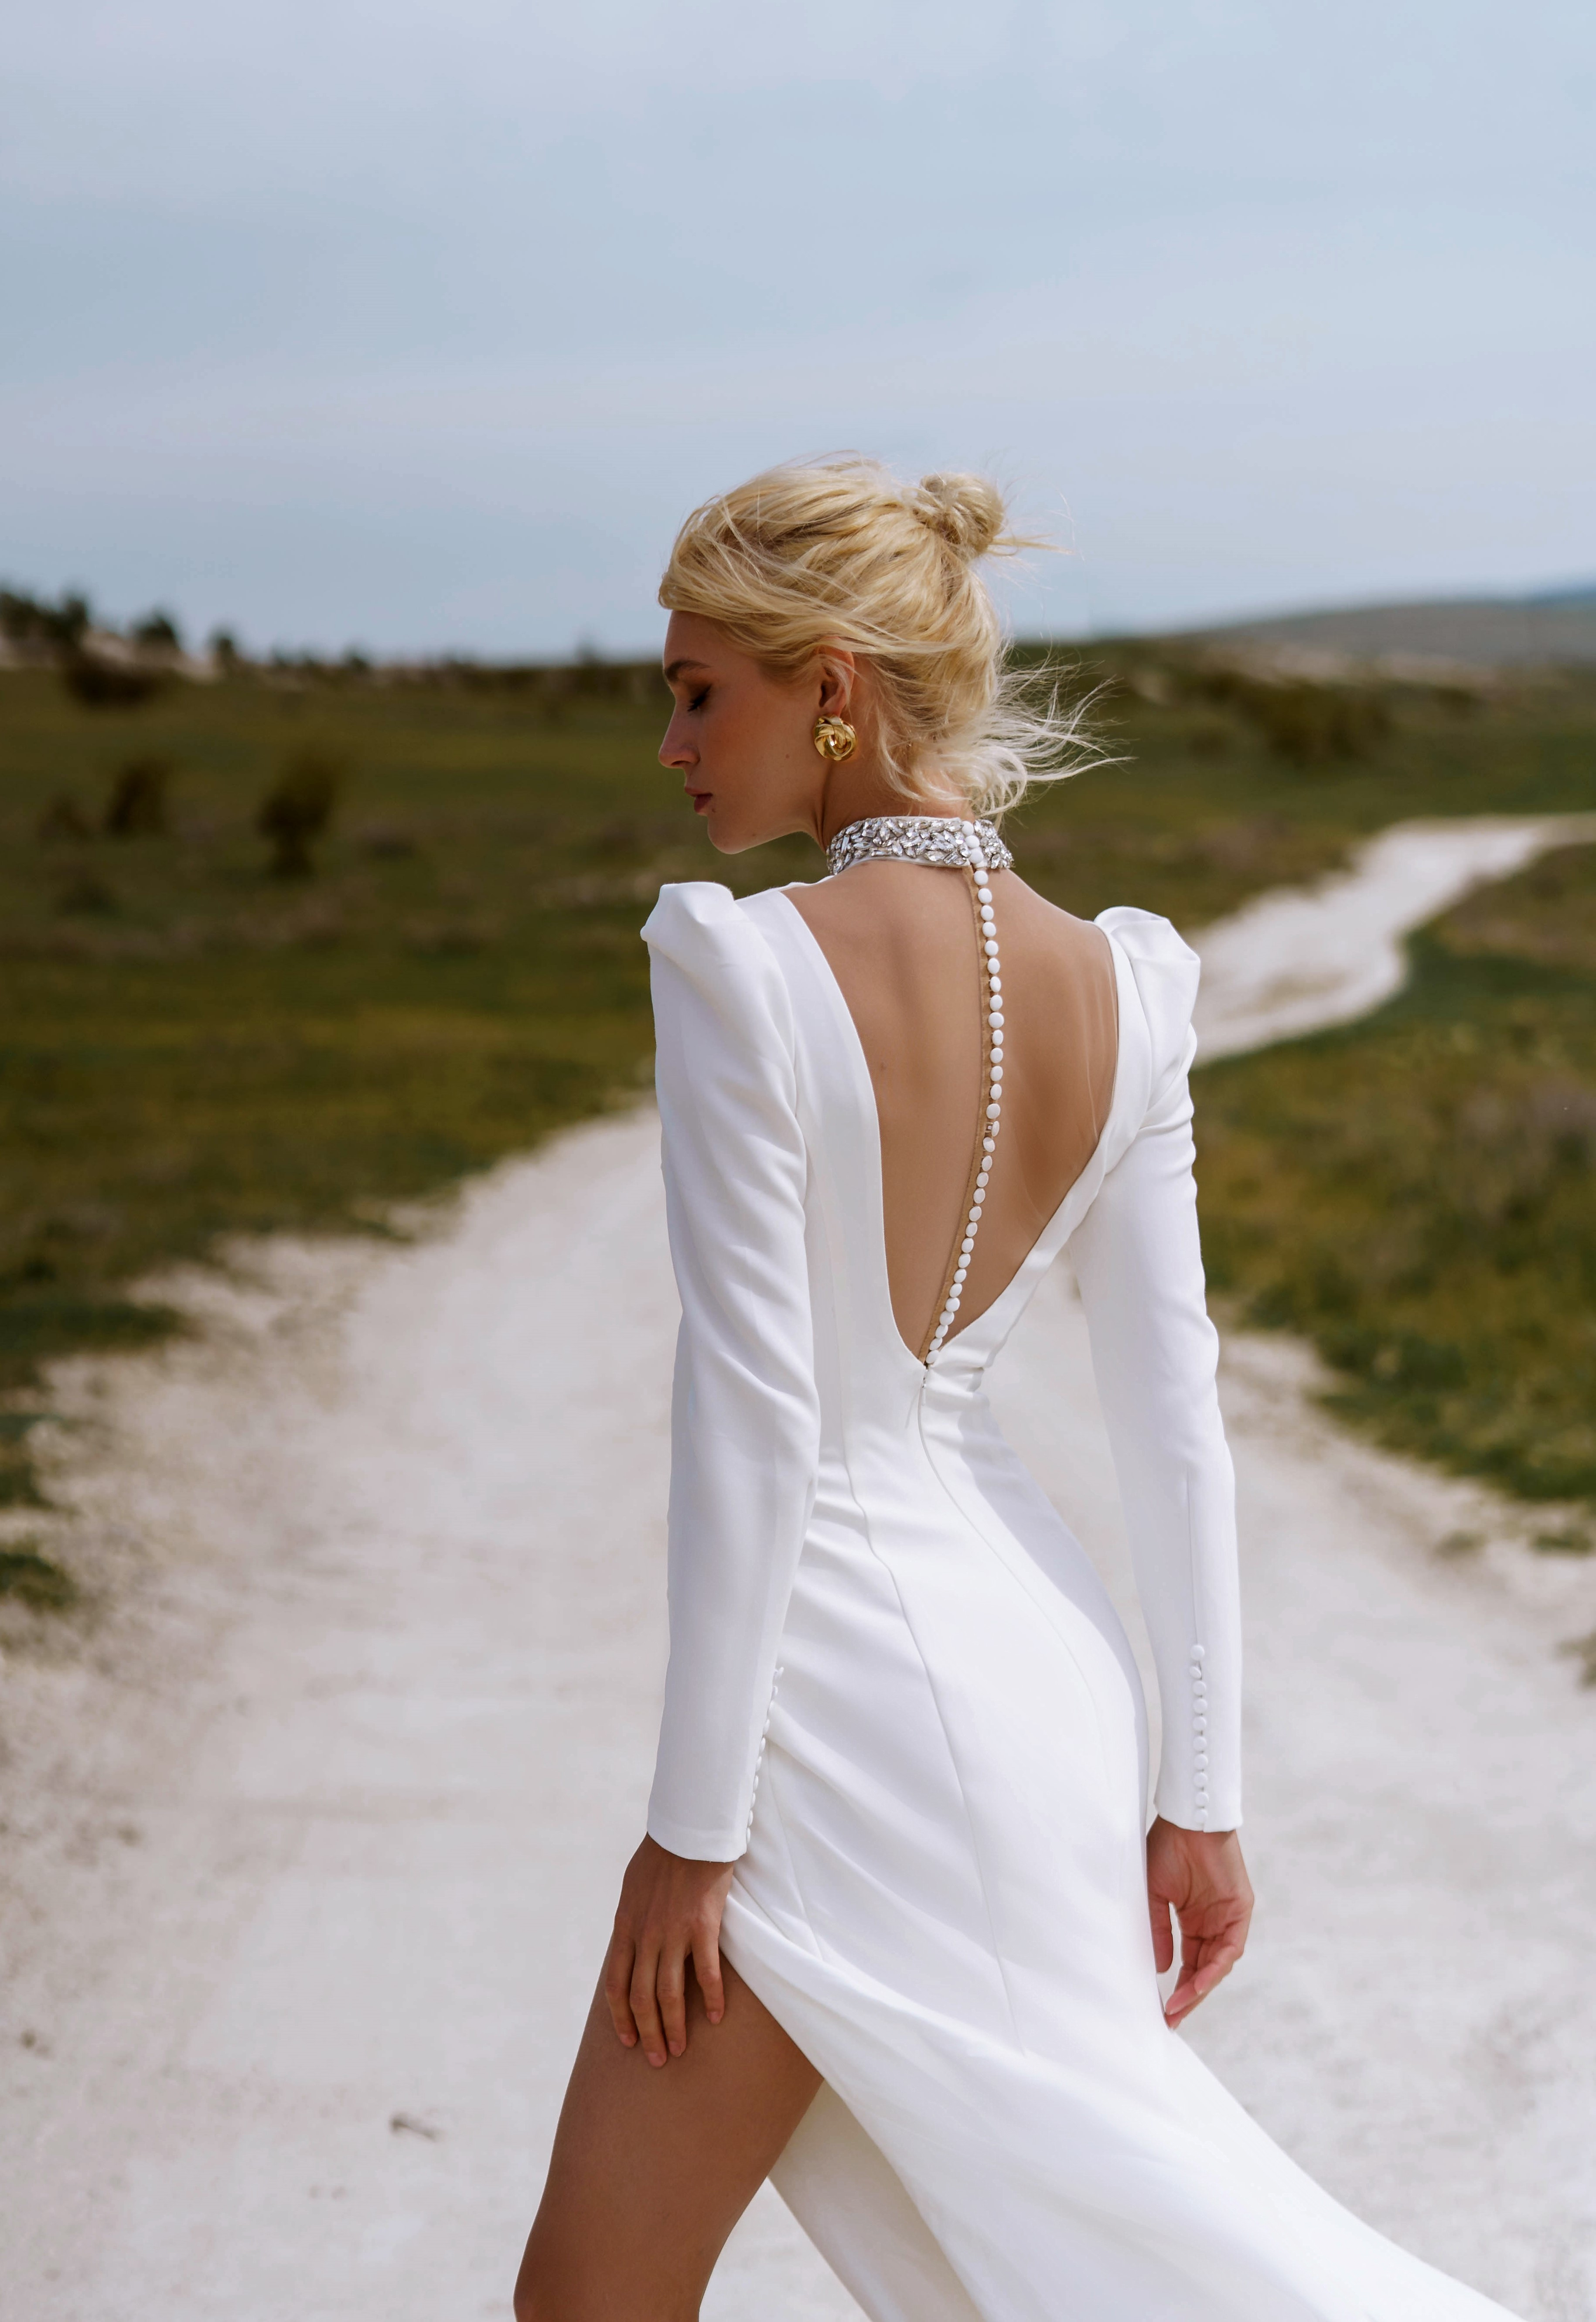 Купить свадебное платье «Лея» Наталья Романова из коллекции Блаш 2022 года в салоне «Мэри Трюфель»